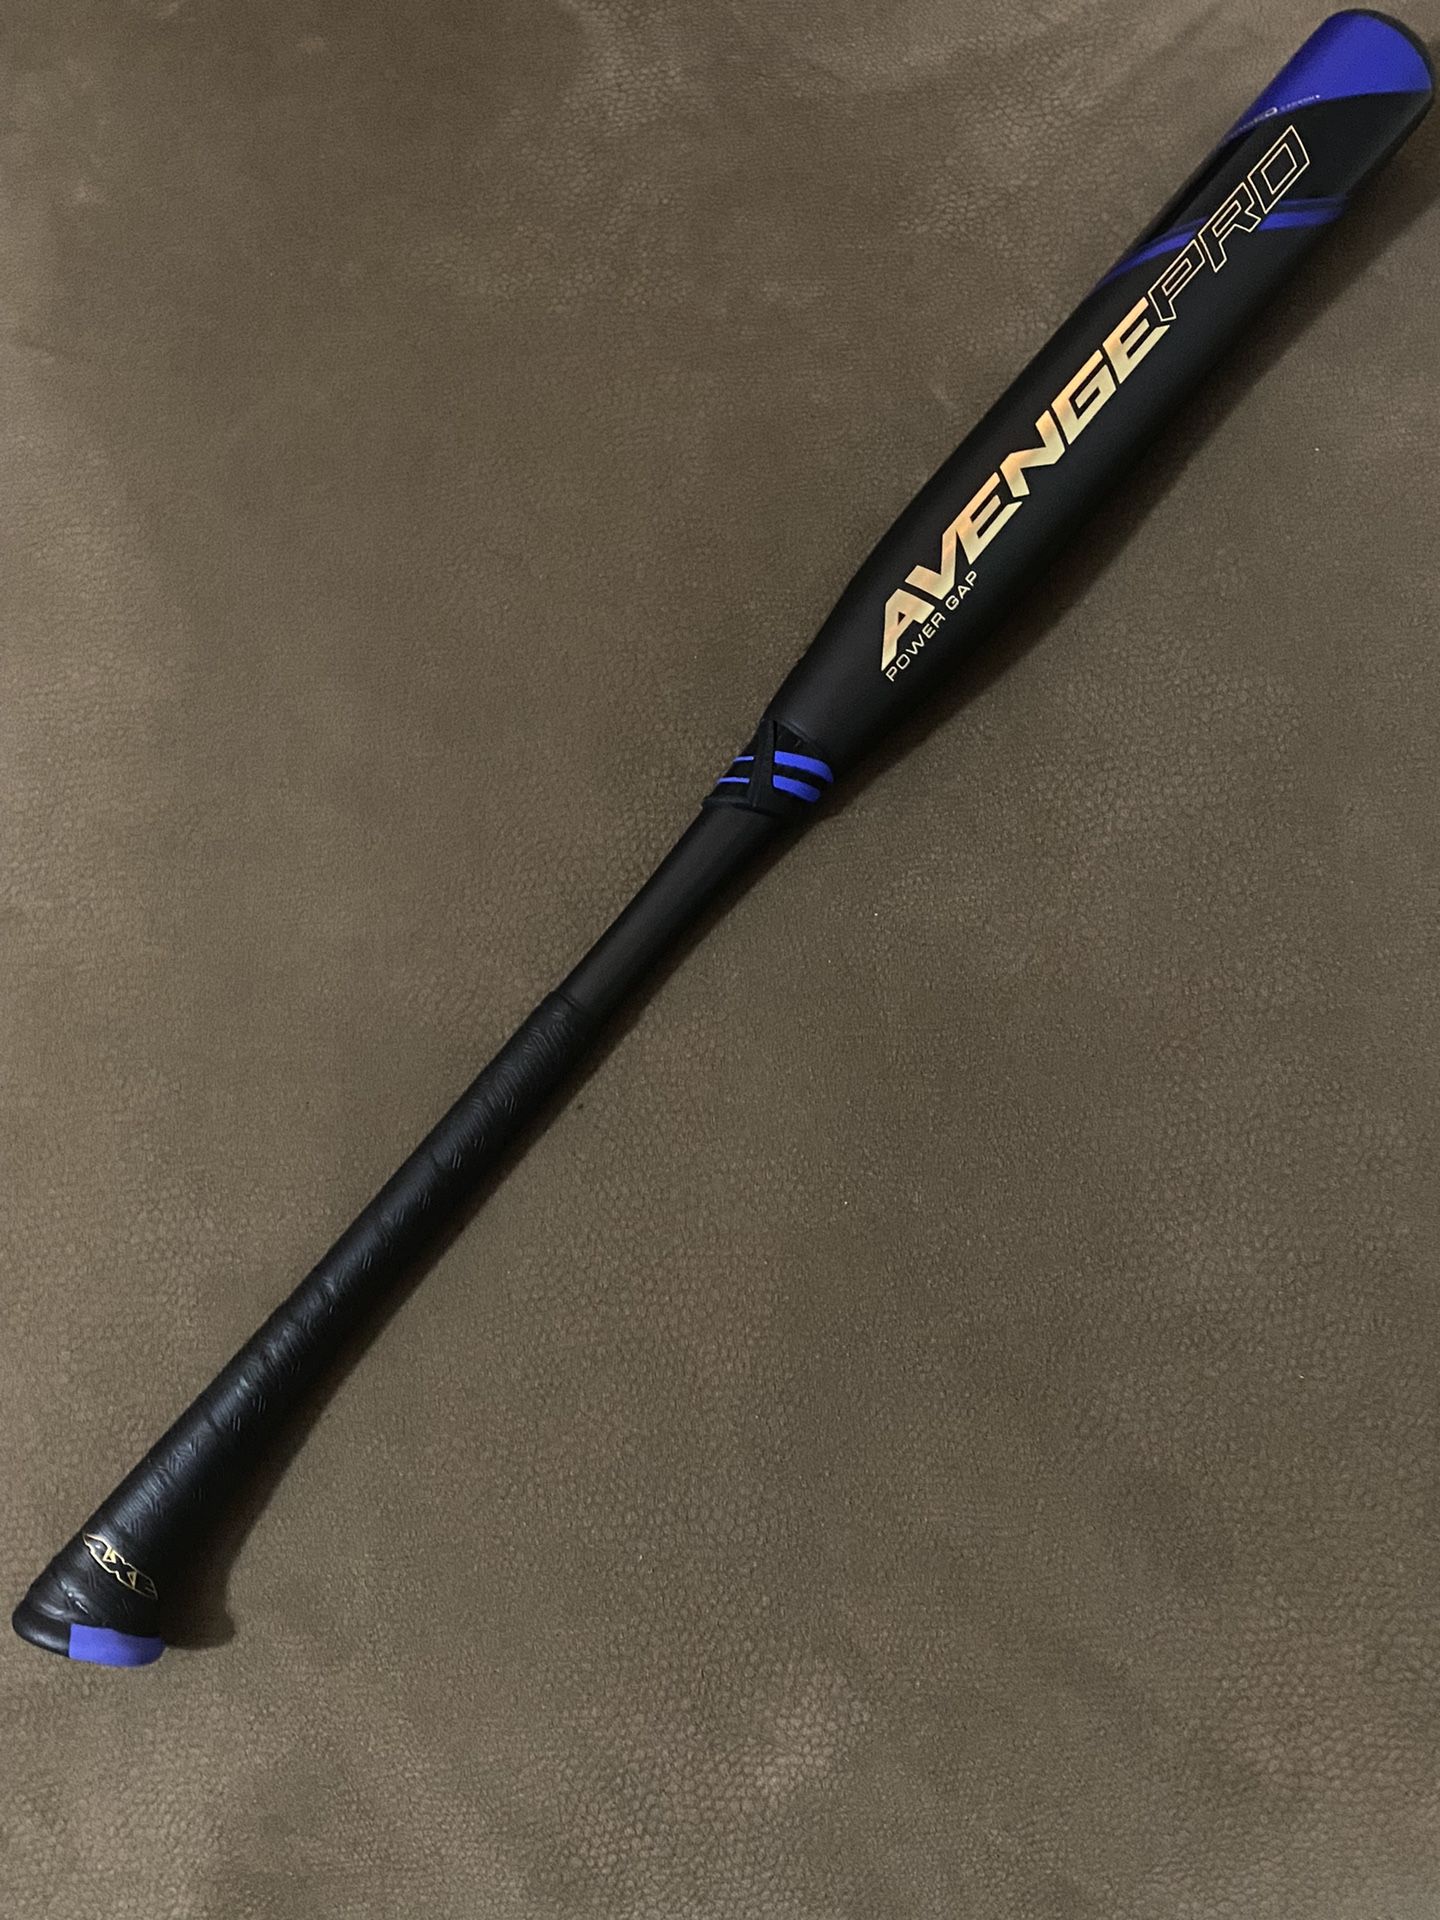 Axe Avengepro Baseball Bat